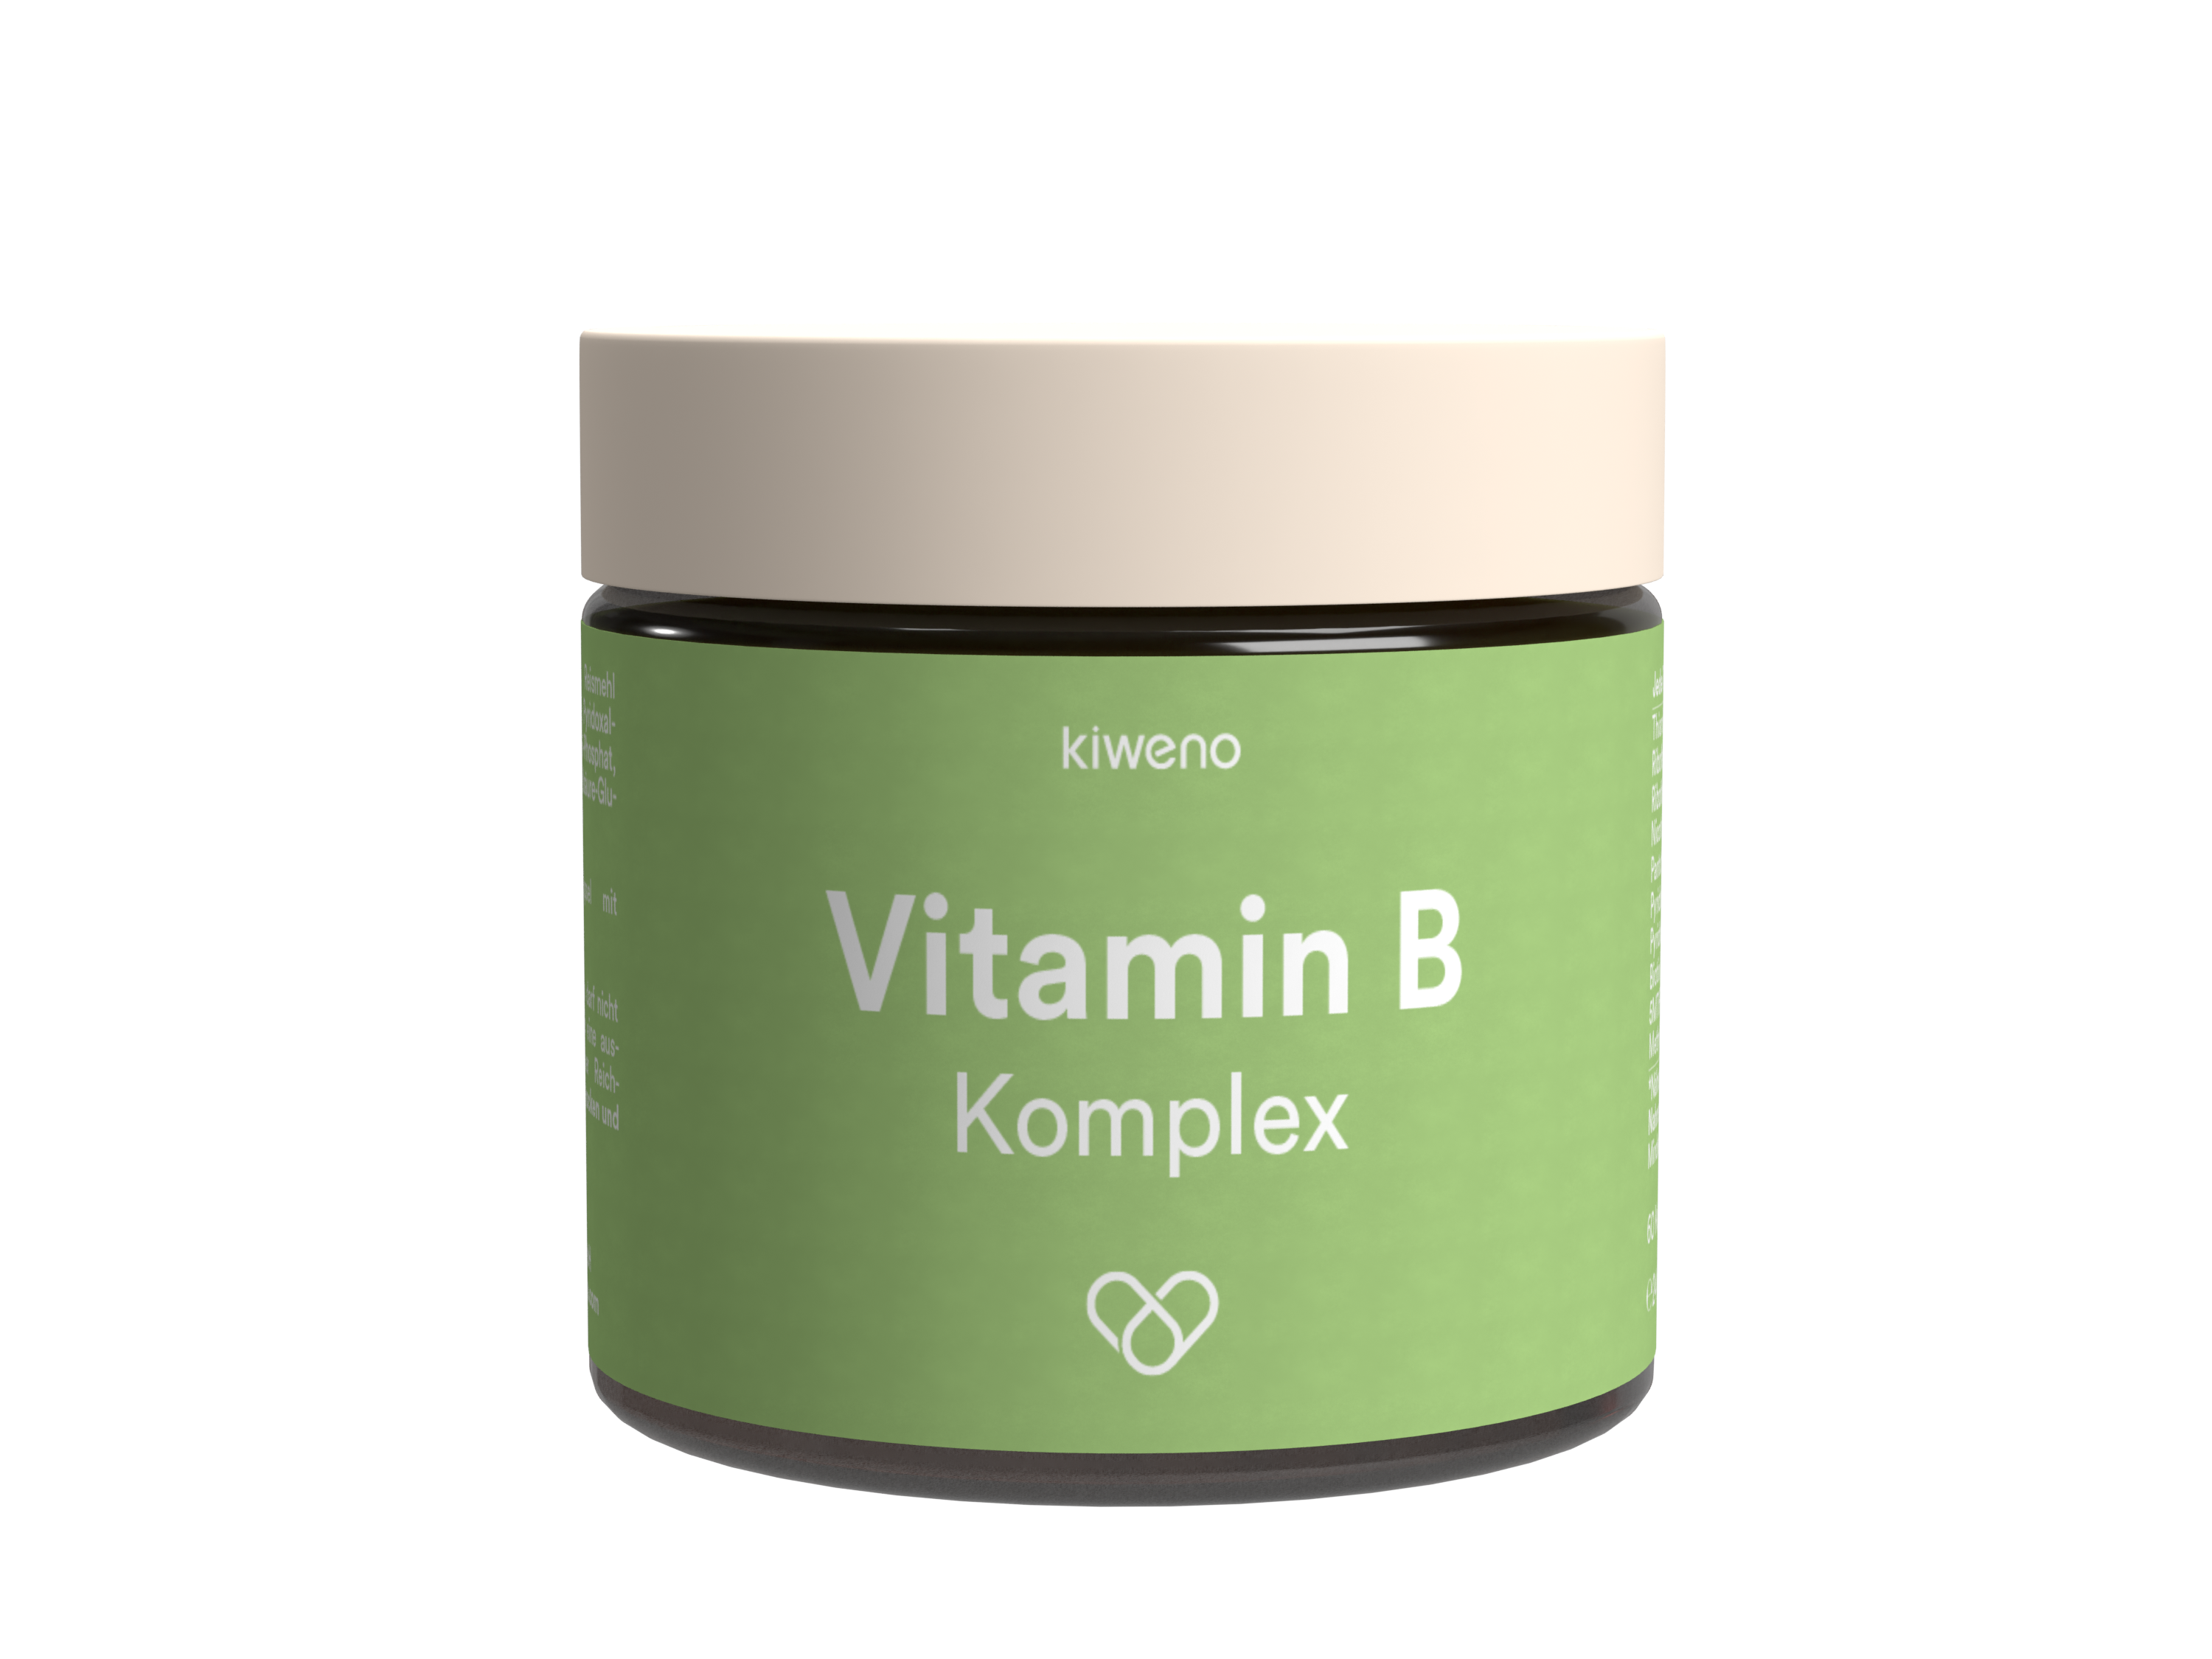 Vitamin B Komplex - alle 8 B-Vitamine in einer Kapsel